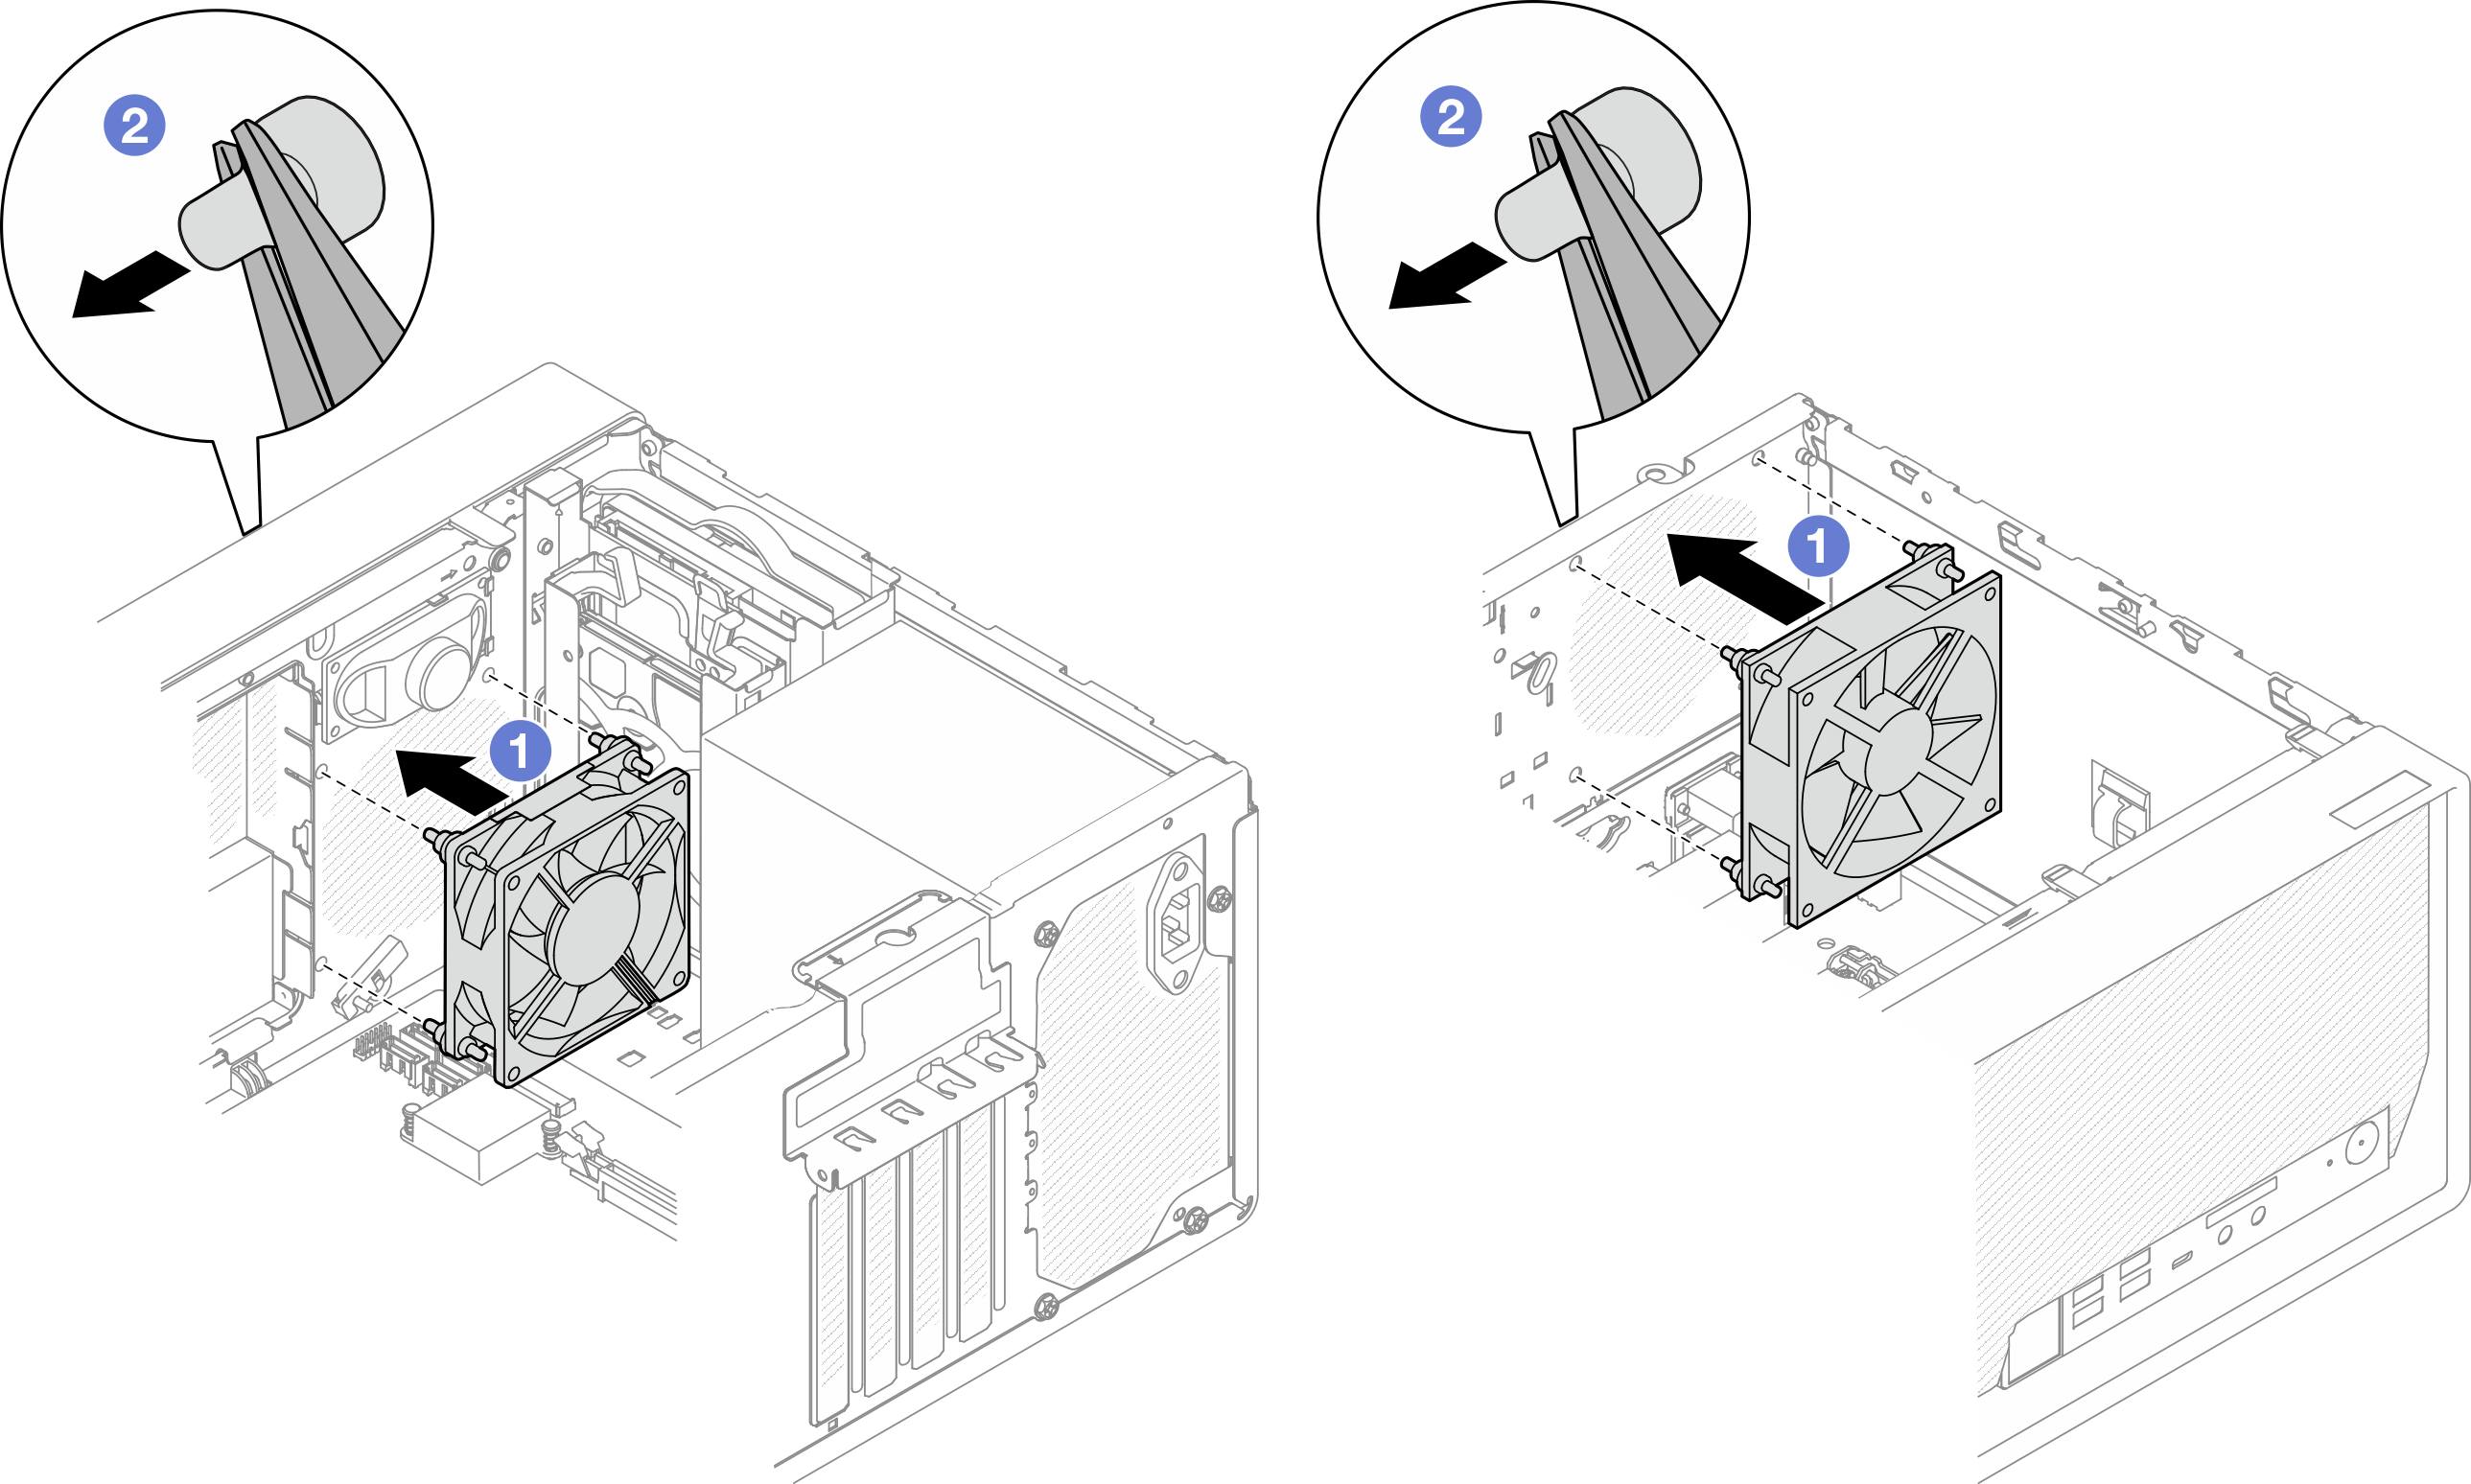 Installing the front fan or the rear fan